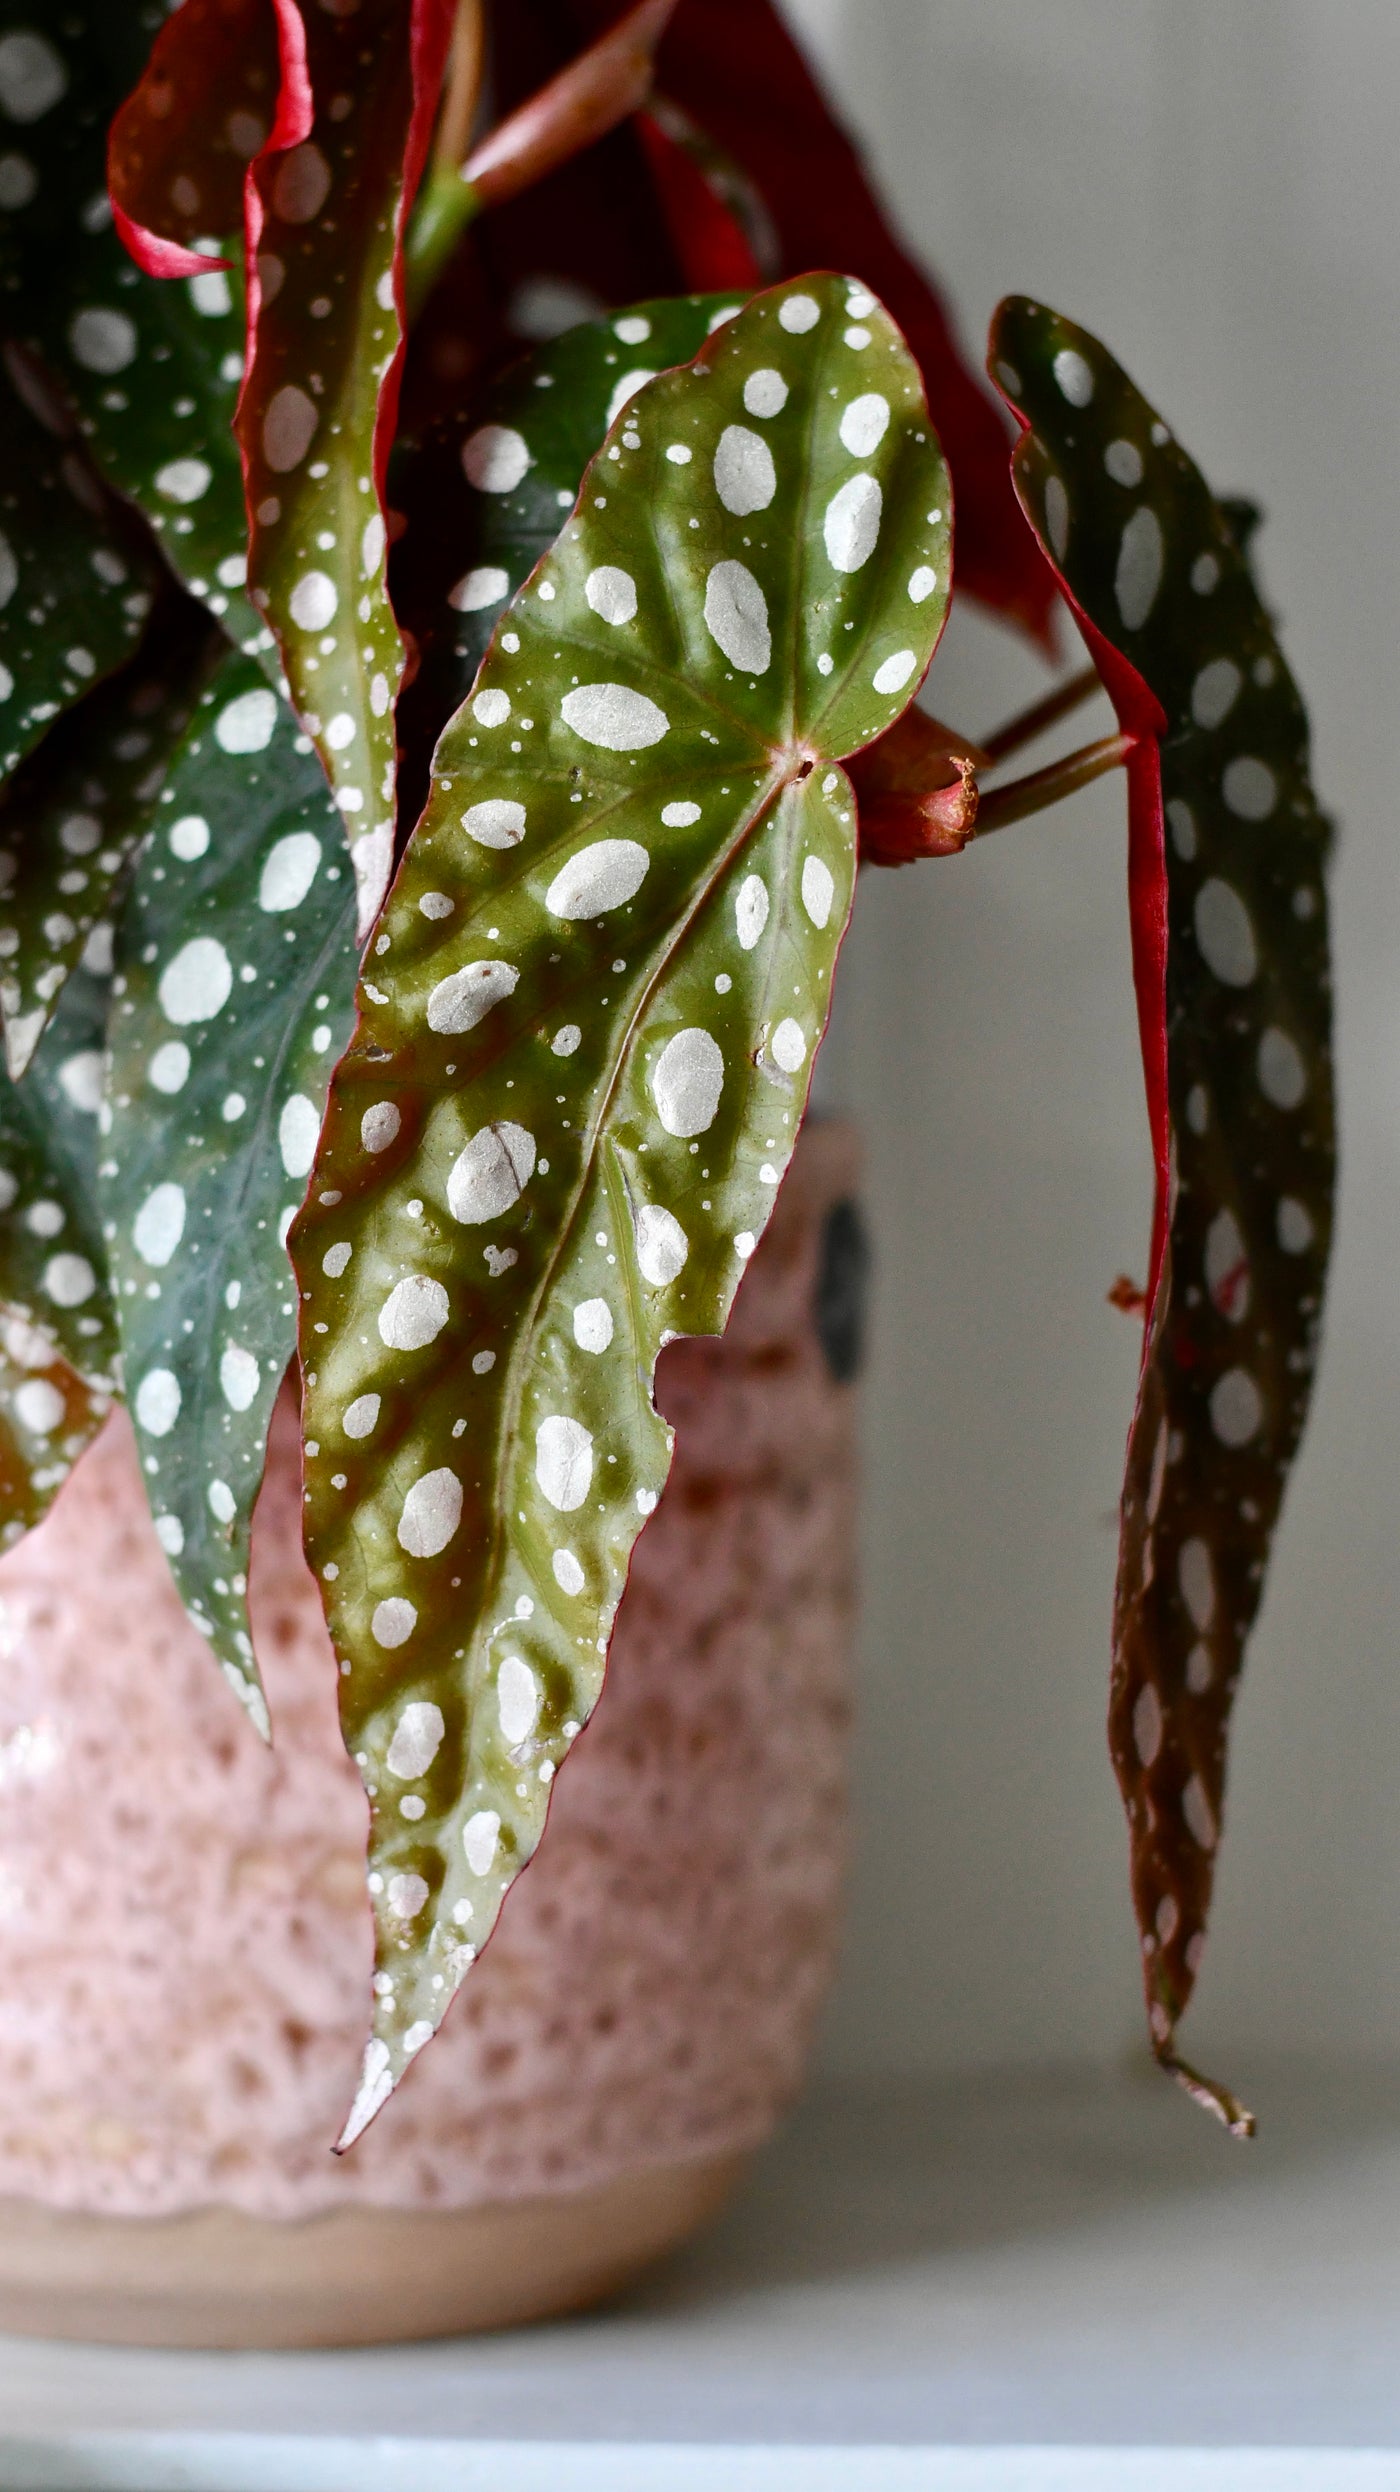 Begonia Begonia Maculata | Polka Dot Begonia | Clown Begonia